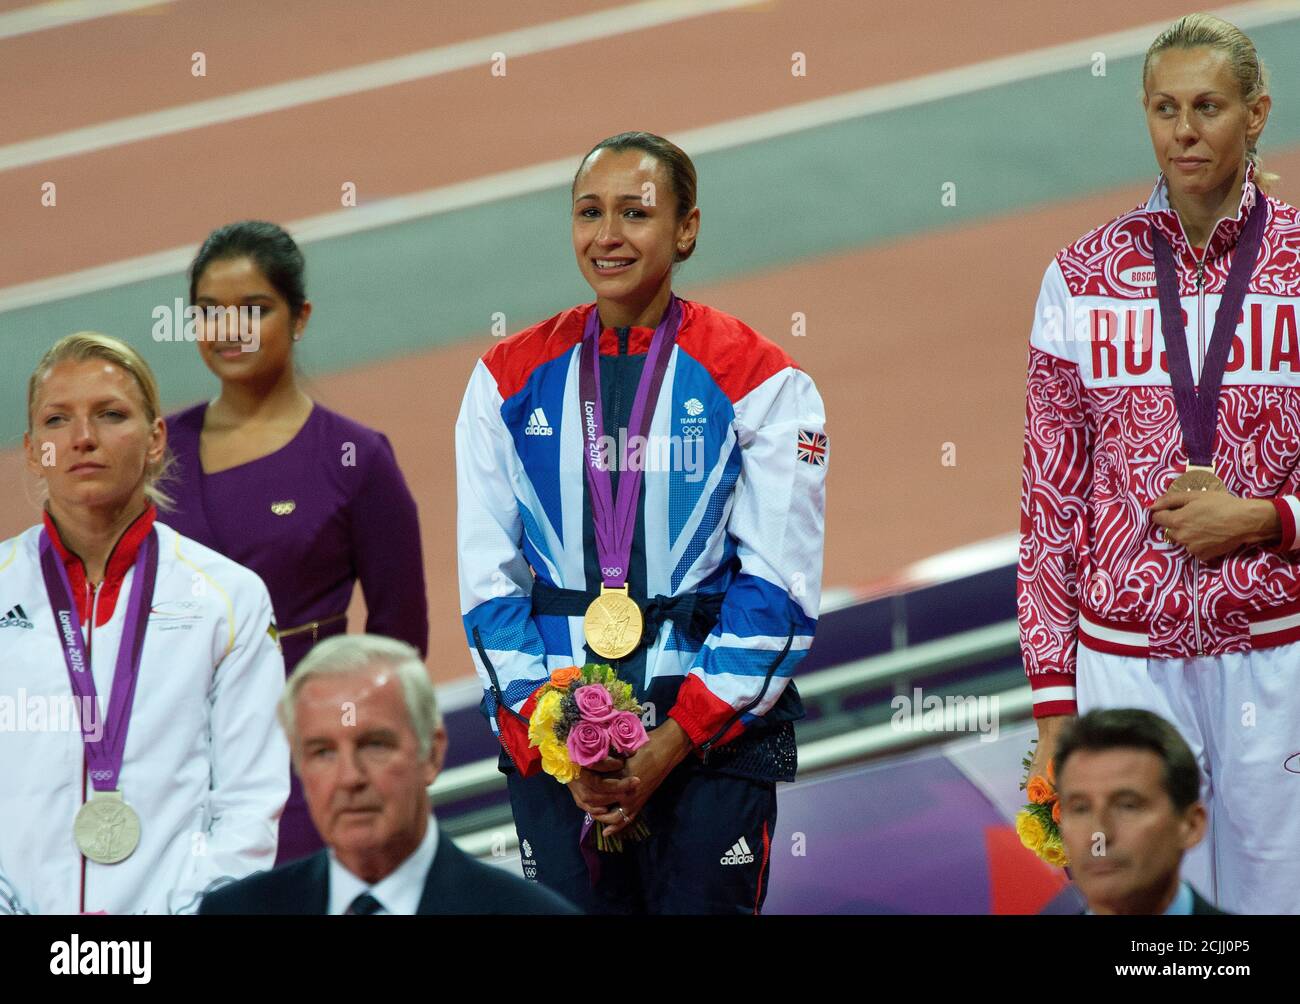 Jessica Ennis aus Großbritannien feiert den Gewinn der Goldmedaille in der Women's Heptathalon 2012 London Olympics Pic Credit : MARK PAIN / ALAMY Stockfoto